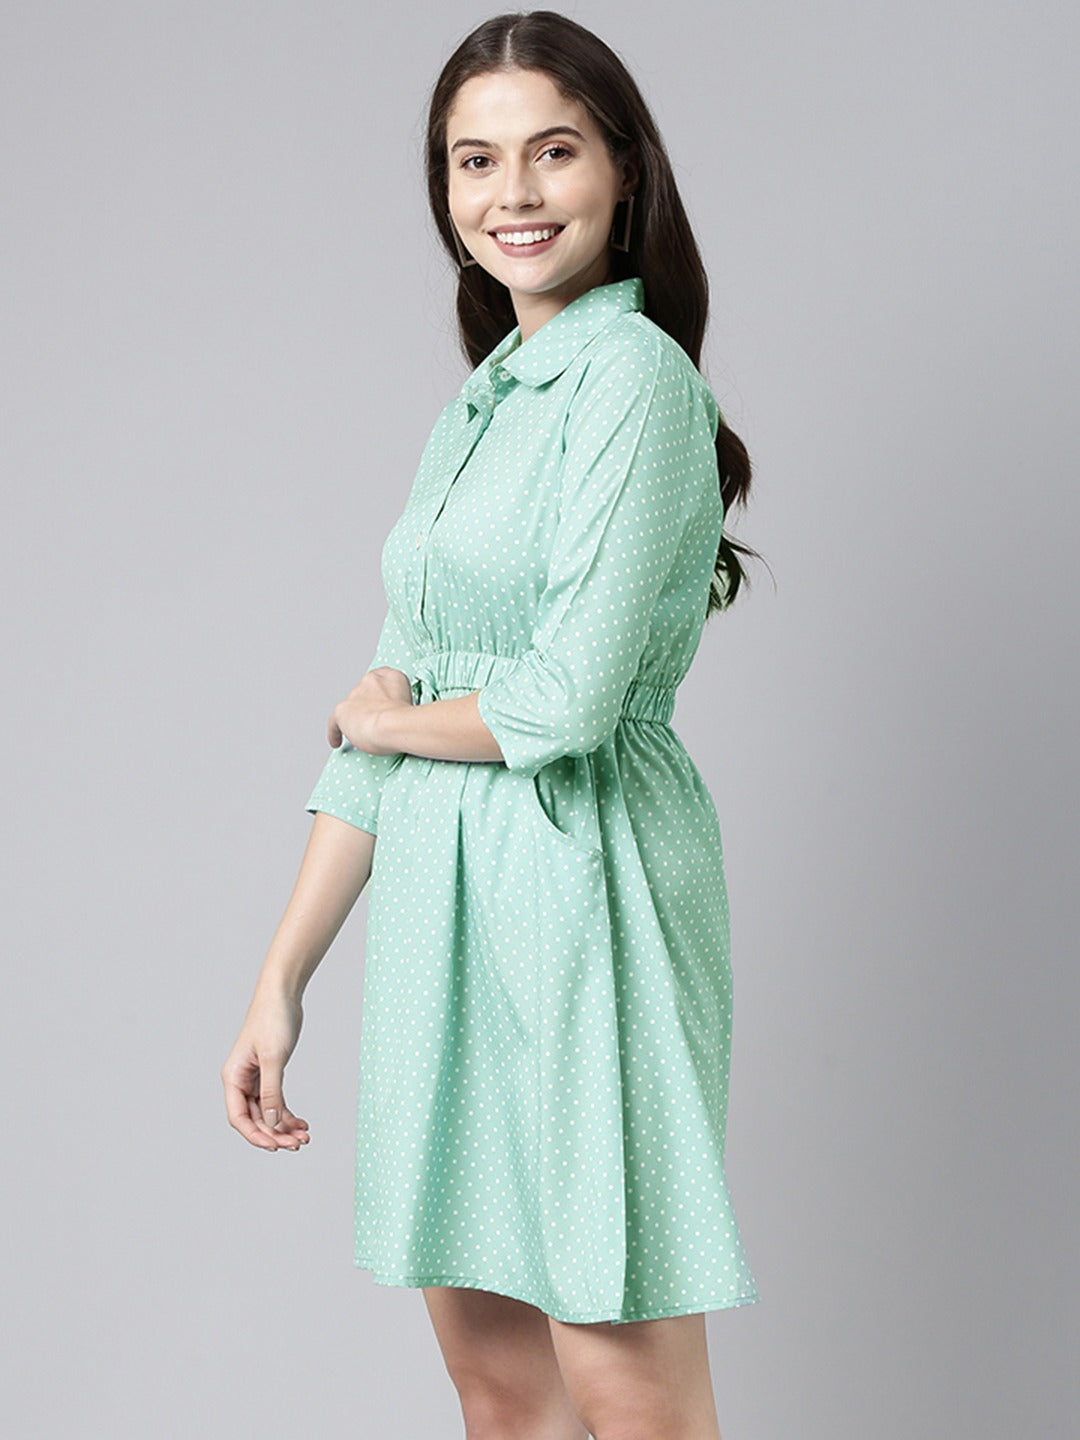 Women's Green Crepe Polka Dots Printed Dress  - Ahika